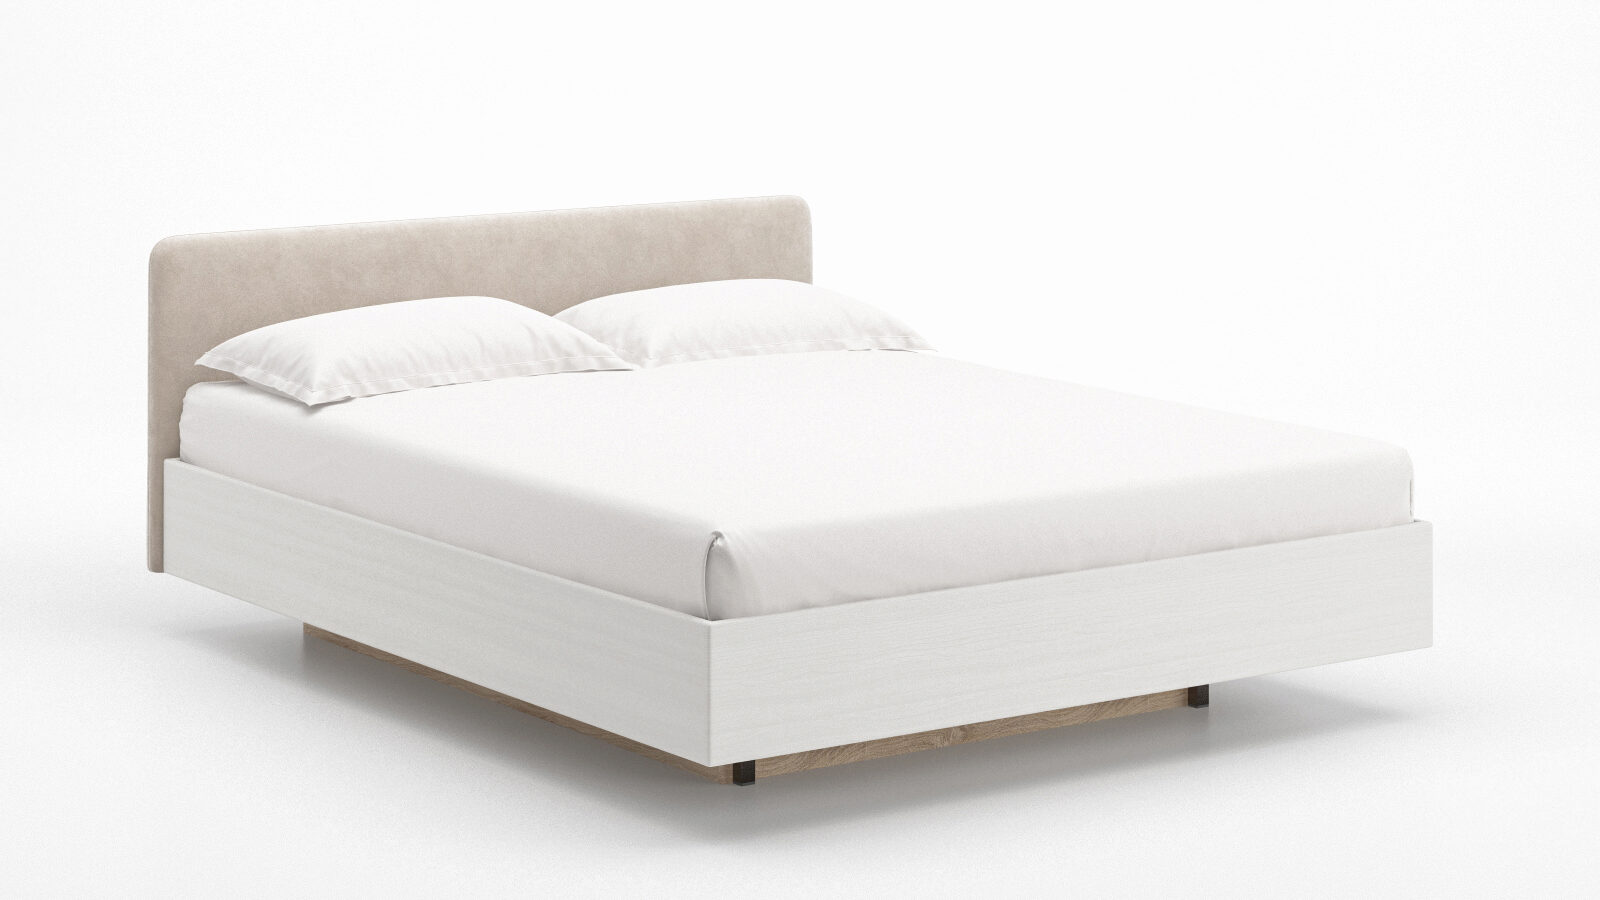 Кровать Gretta с подъемником, текстурная белая поверхность.